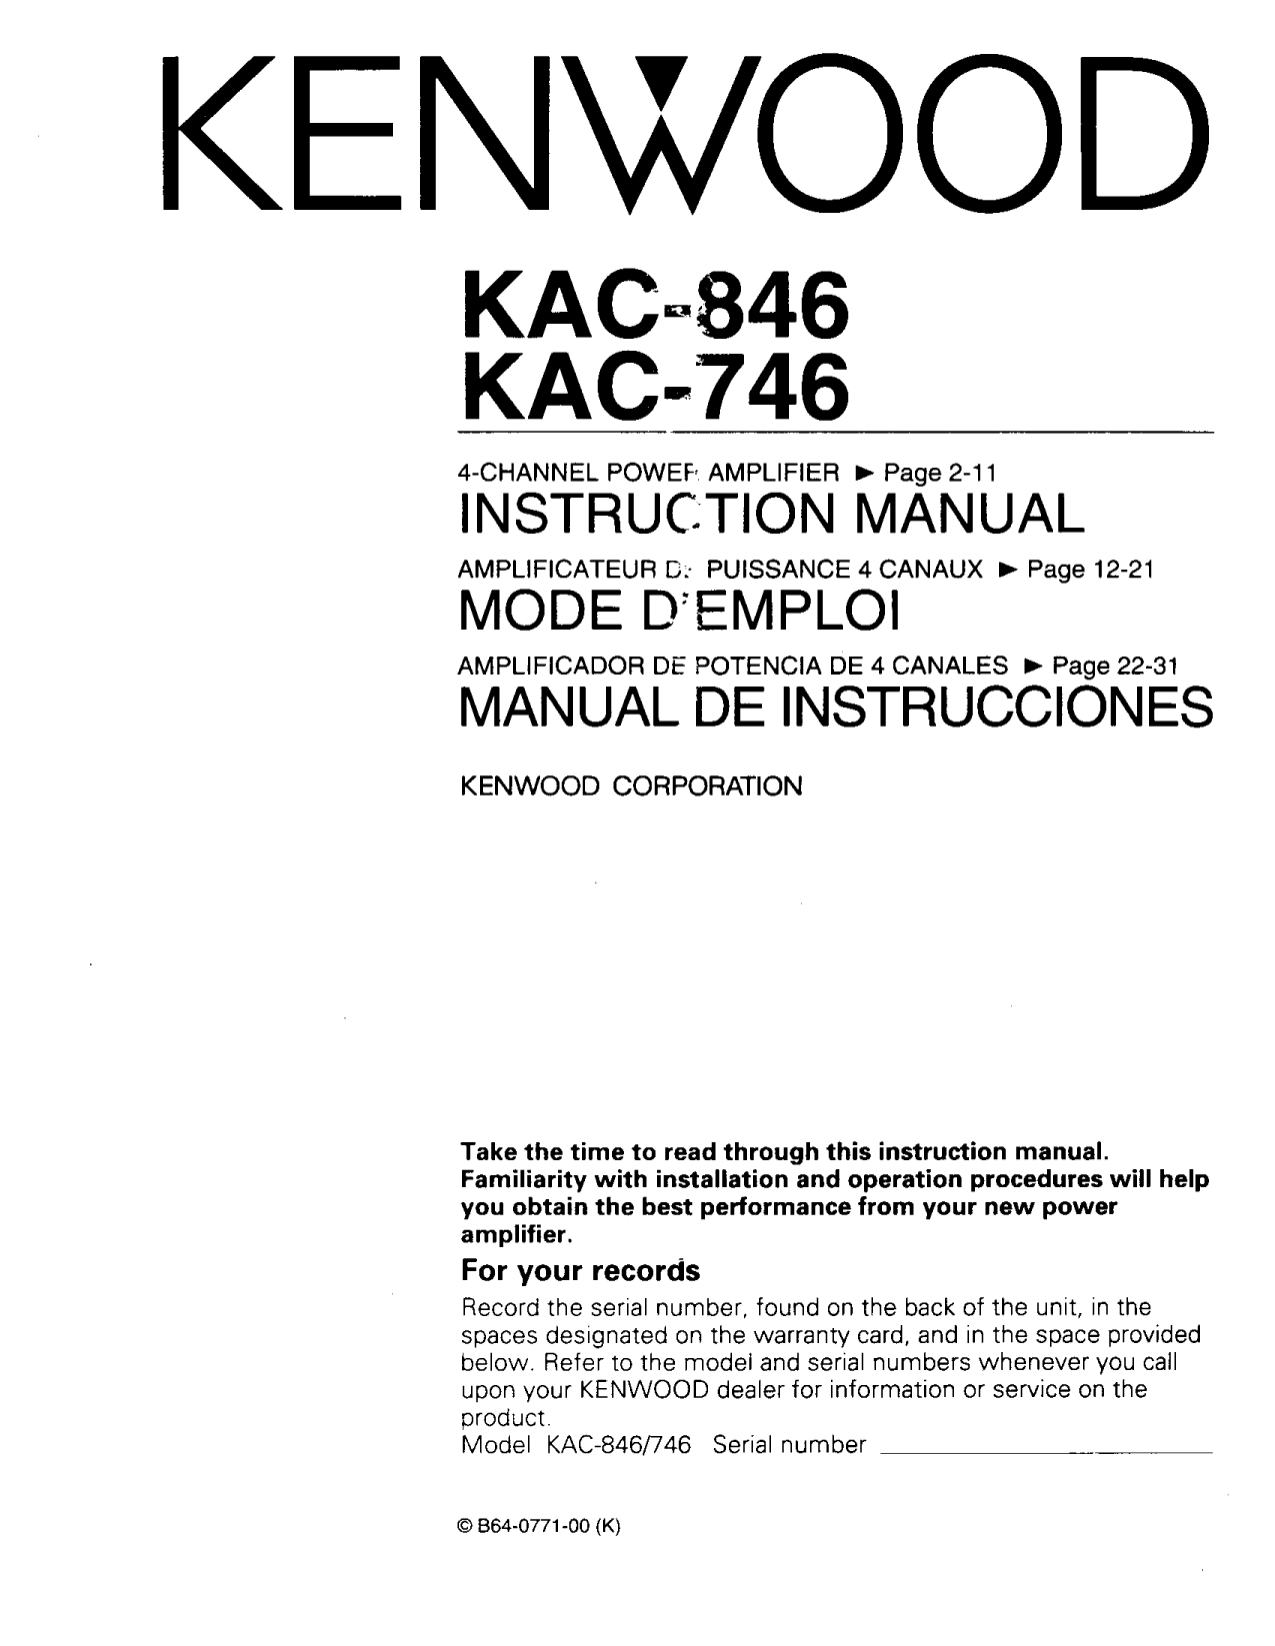 Kenwood kac 846 инструкция